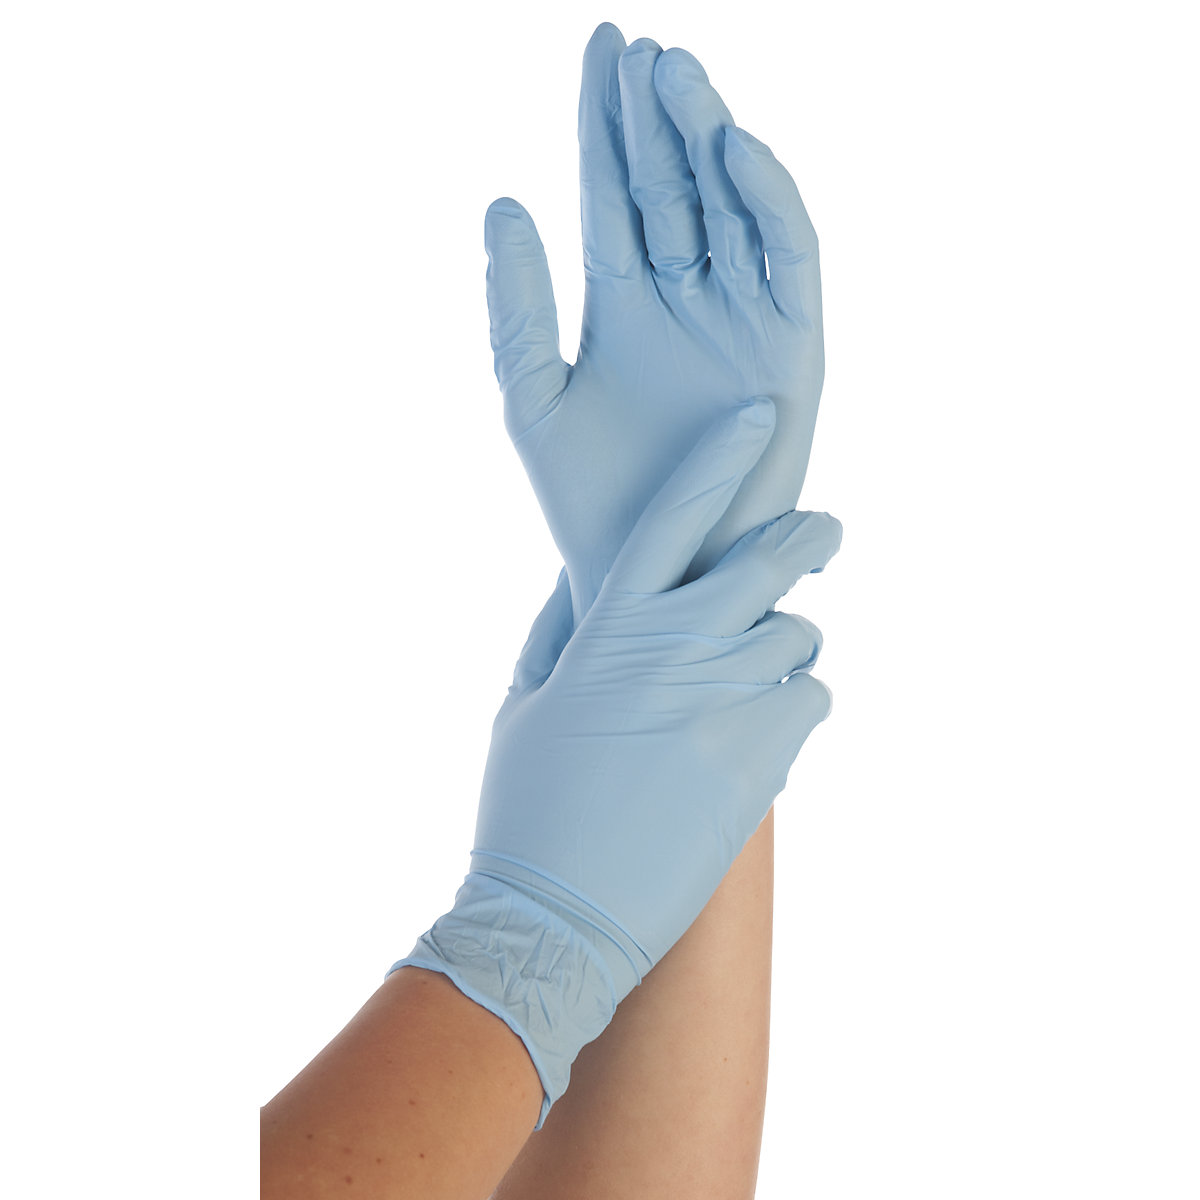 SAFE LIGHT disposable nitrile gloves